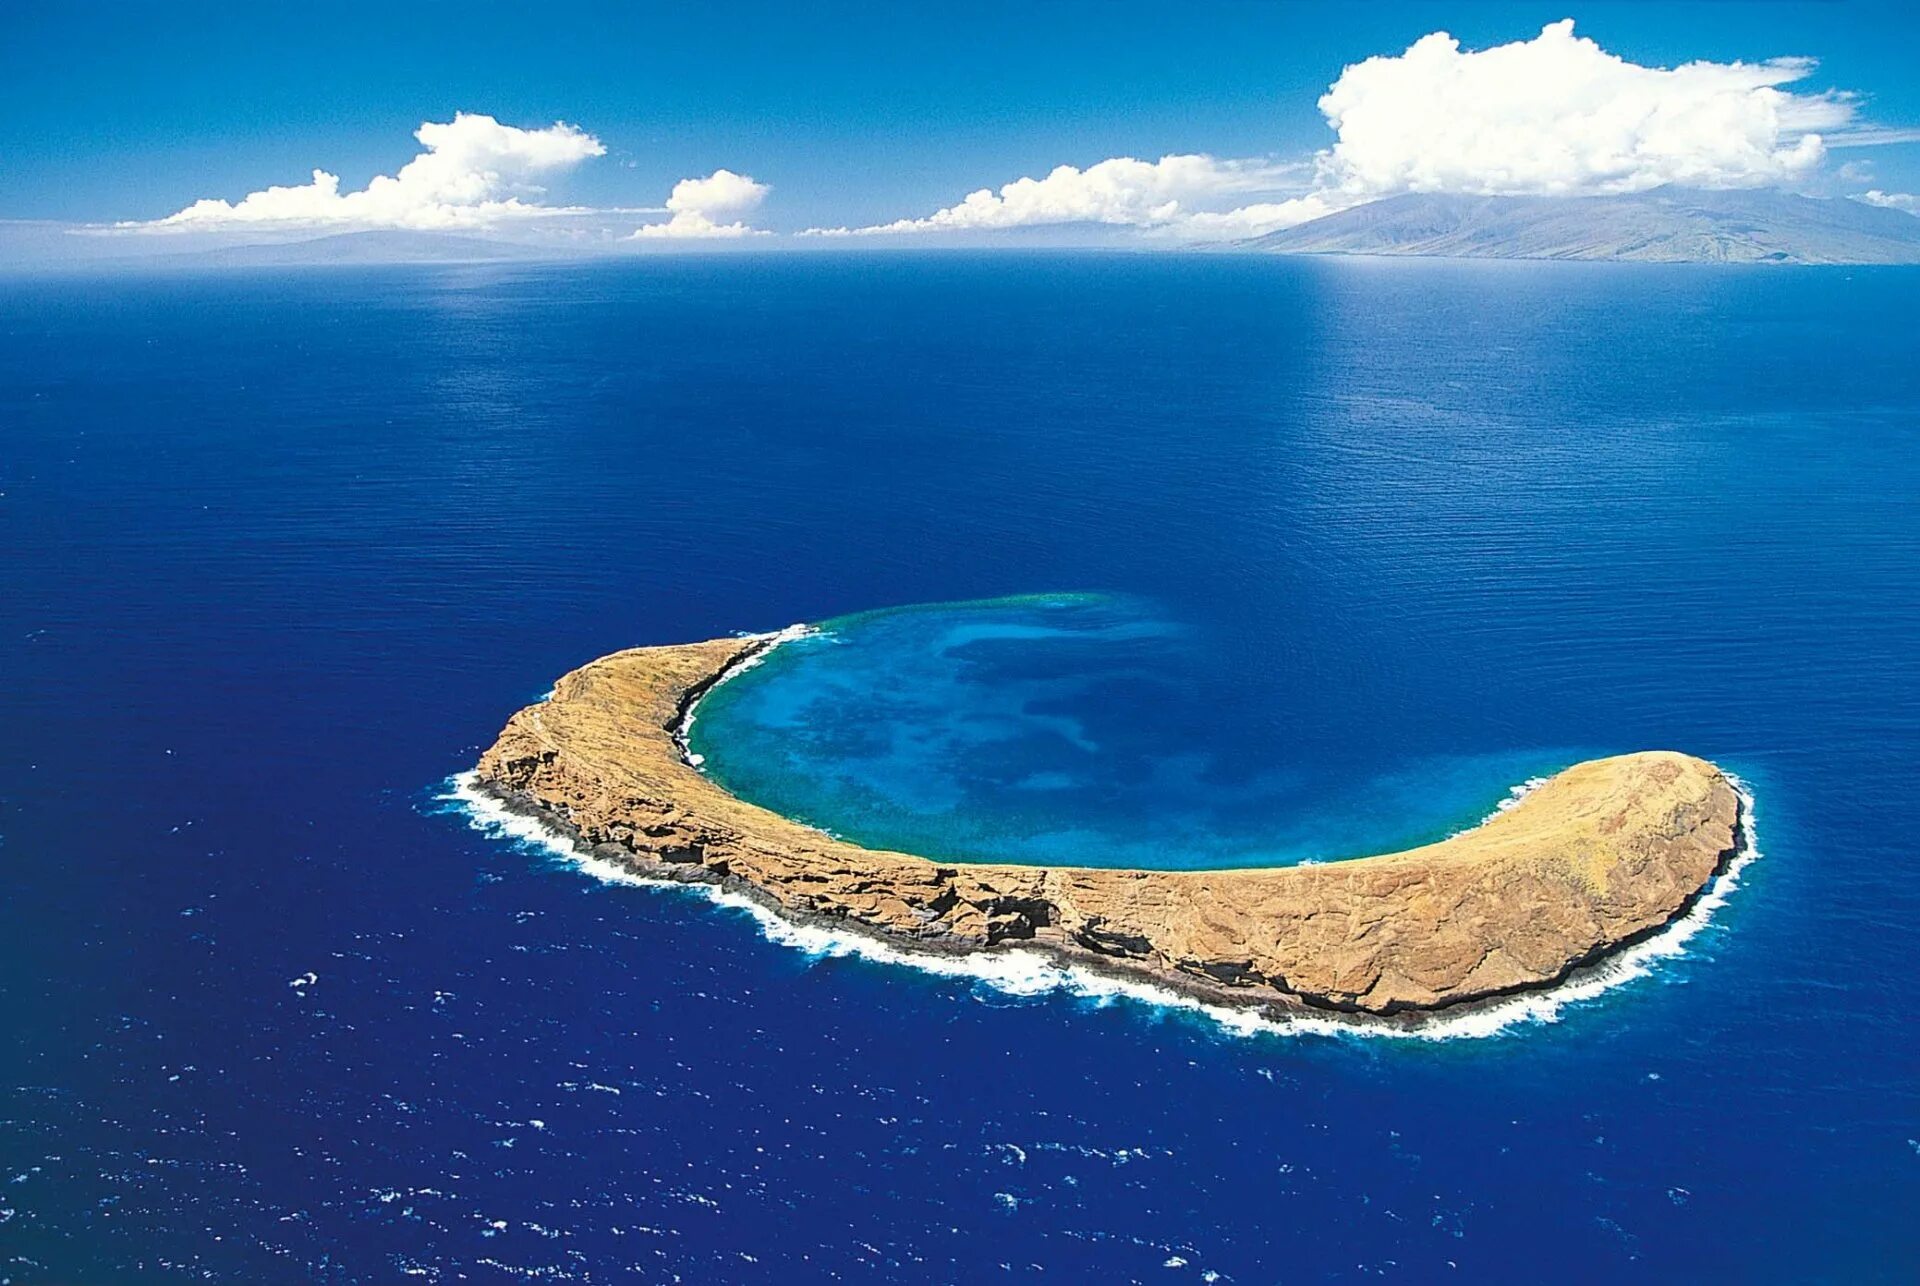 Сами больше море в мире. Молокини Гавайи. Кратер Молокини, Гавайи. Атолл Молокини, Гавайи. Атолл Рокас Бразилия.